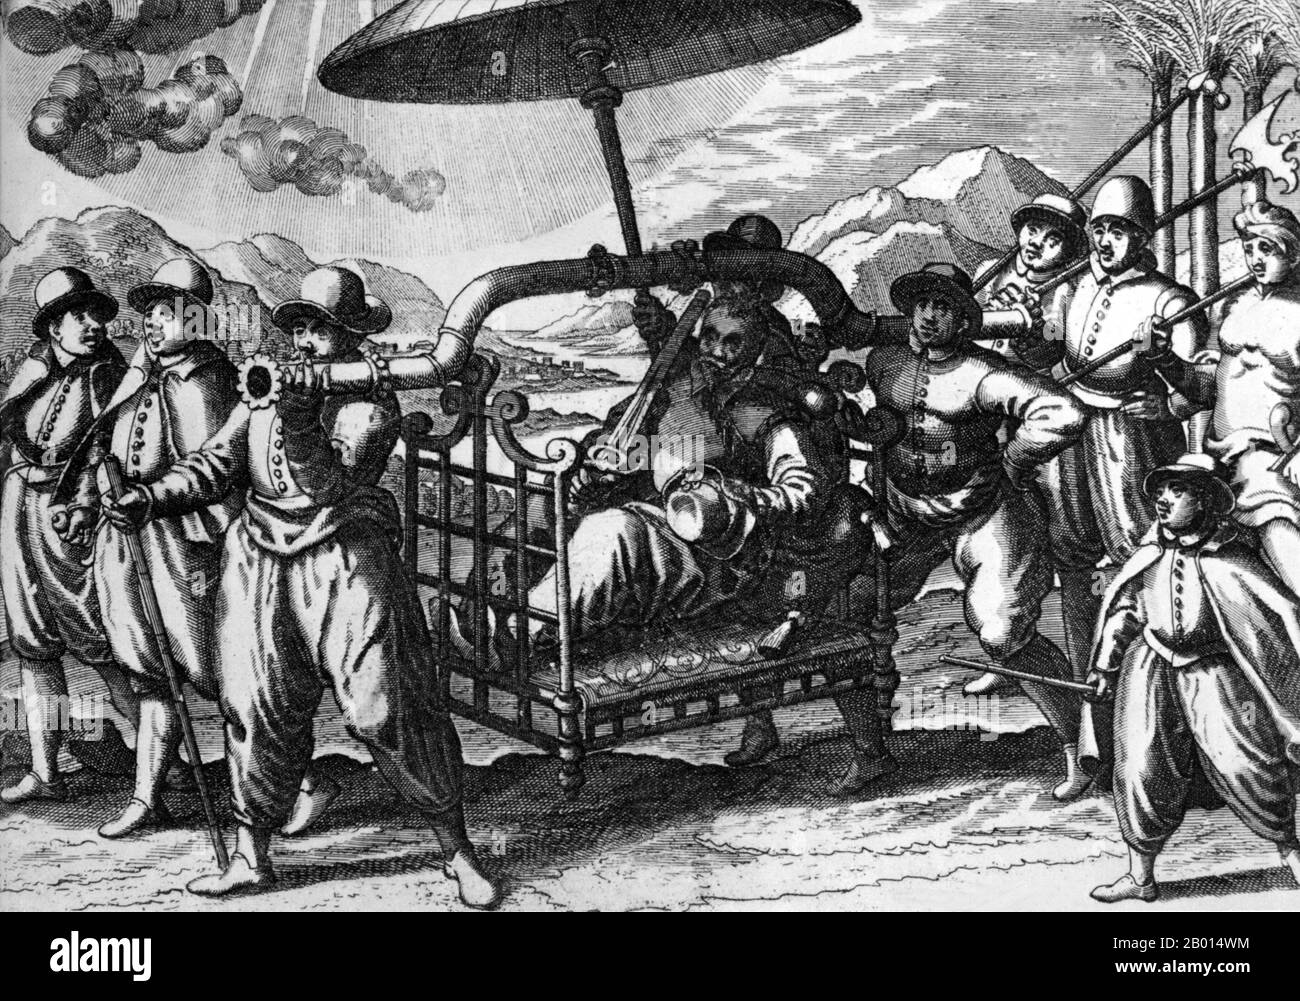 Inde/Portugal: Un marchand portugais est porté sur un palanquin par ses serviteurs indiens. Gravure de Joannes van Doetecum The Elder (1530-1605), c. 1596. Sous le roi Manuel I, les Portugais ont mis en place un gouvernement en Inde en 1505, six ans après la découverte d'une route maritime vers Calicut dans le sud-ouest de l'Inde par Vasco da Gama. À l'origine, les Portugais ont basé leur administration à Kochi/Cochin, au Kerala, mais ont déménagé à Goa en 1510. Jusqu’en 1752, le «État de l’Inde» incluait tous les biens portugais de l’océan Indien, de l’Afrique australe à l’Asie du Sud-est, gouvernés par un vice-roi ou un gouverneur. Banque D'Images